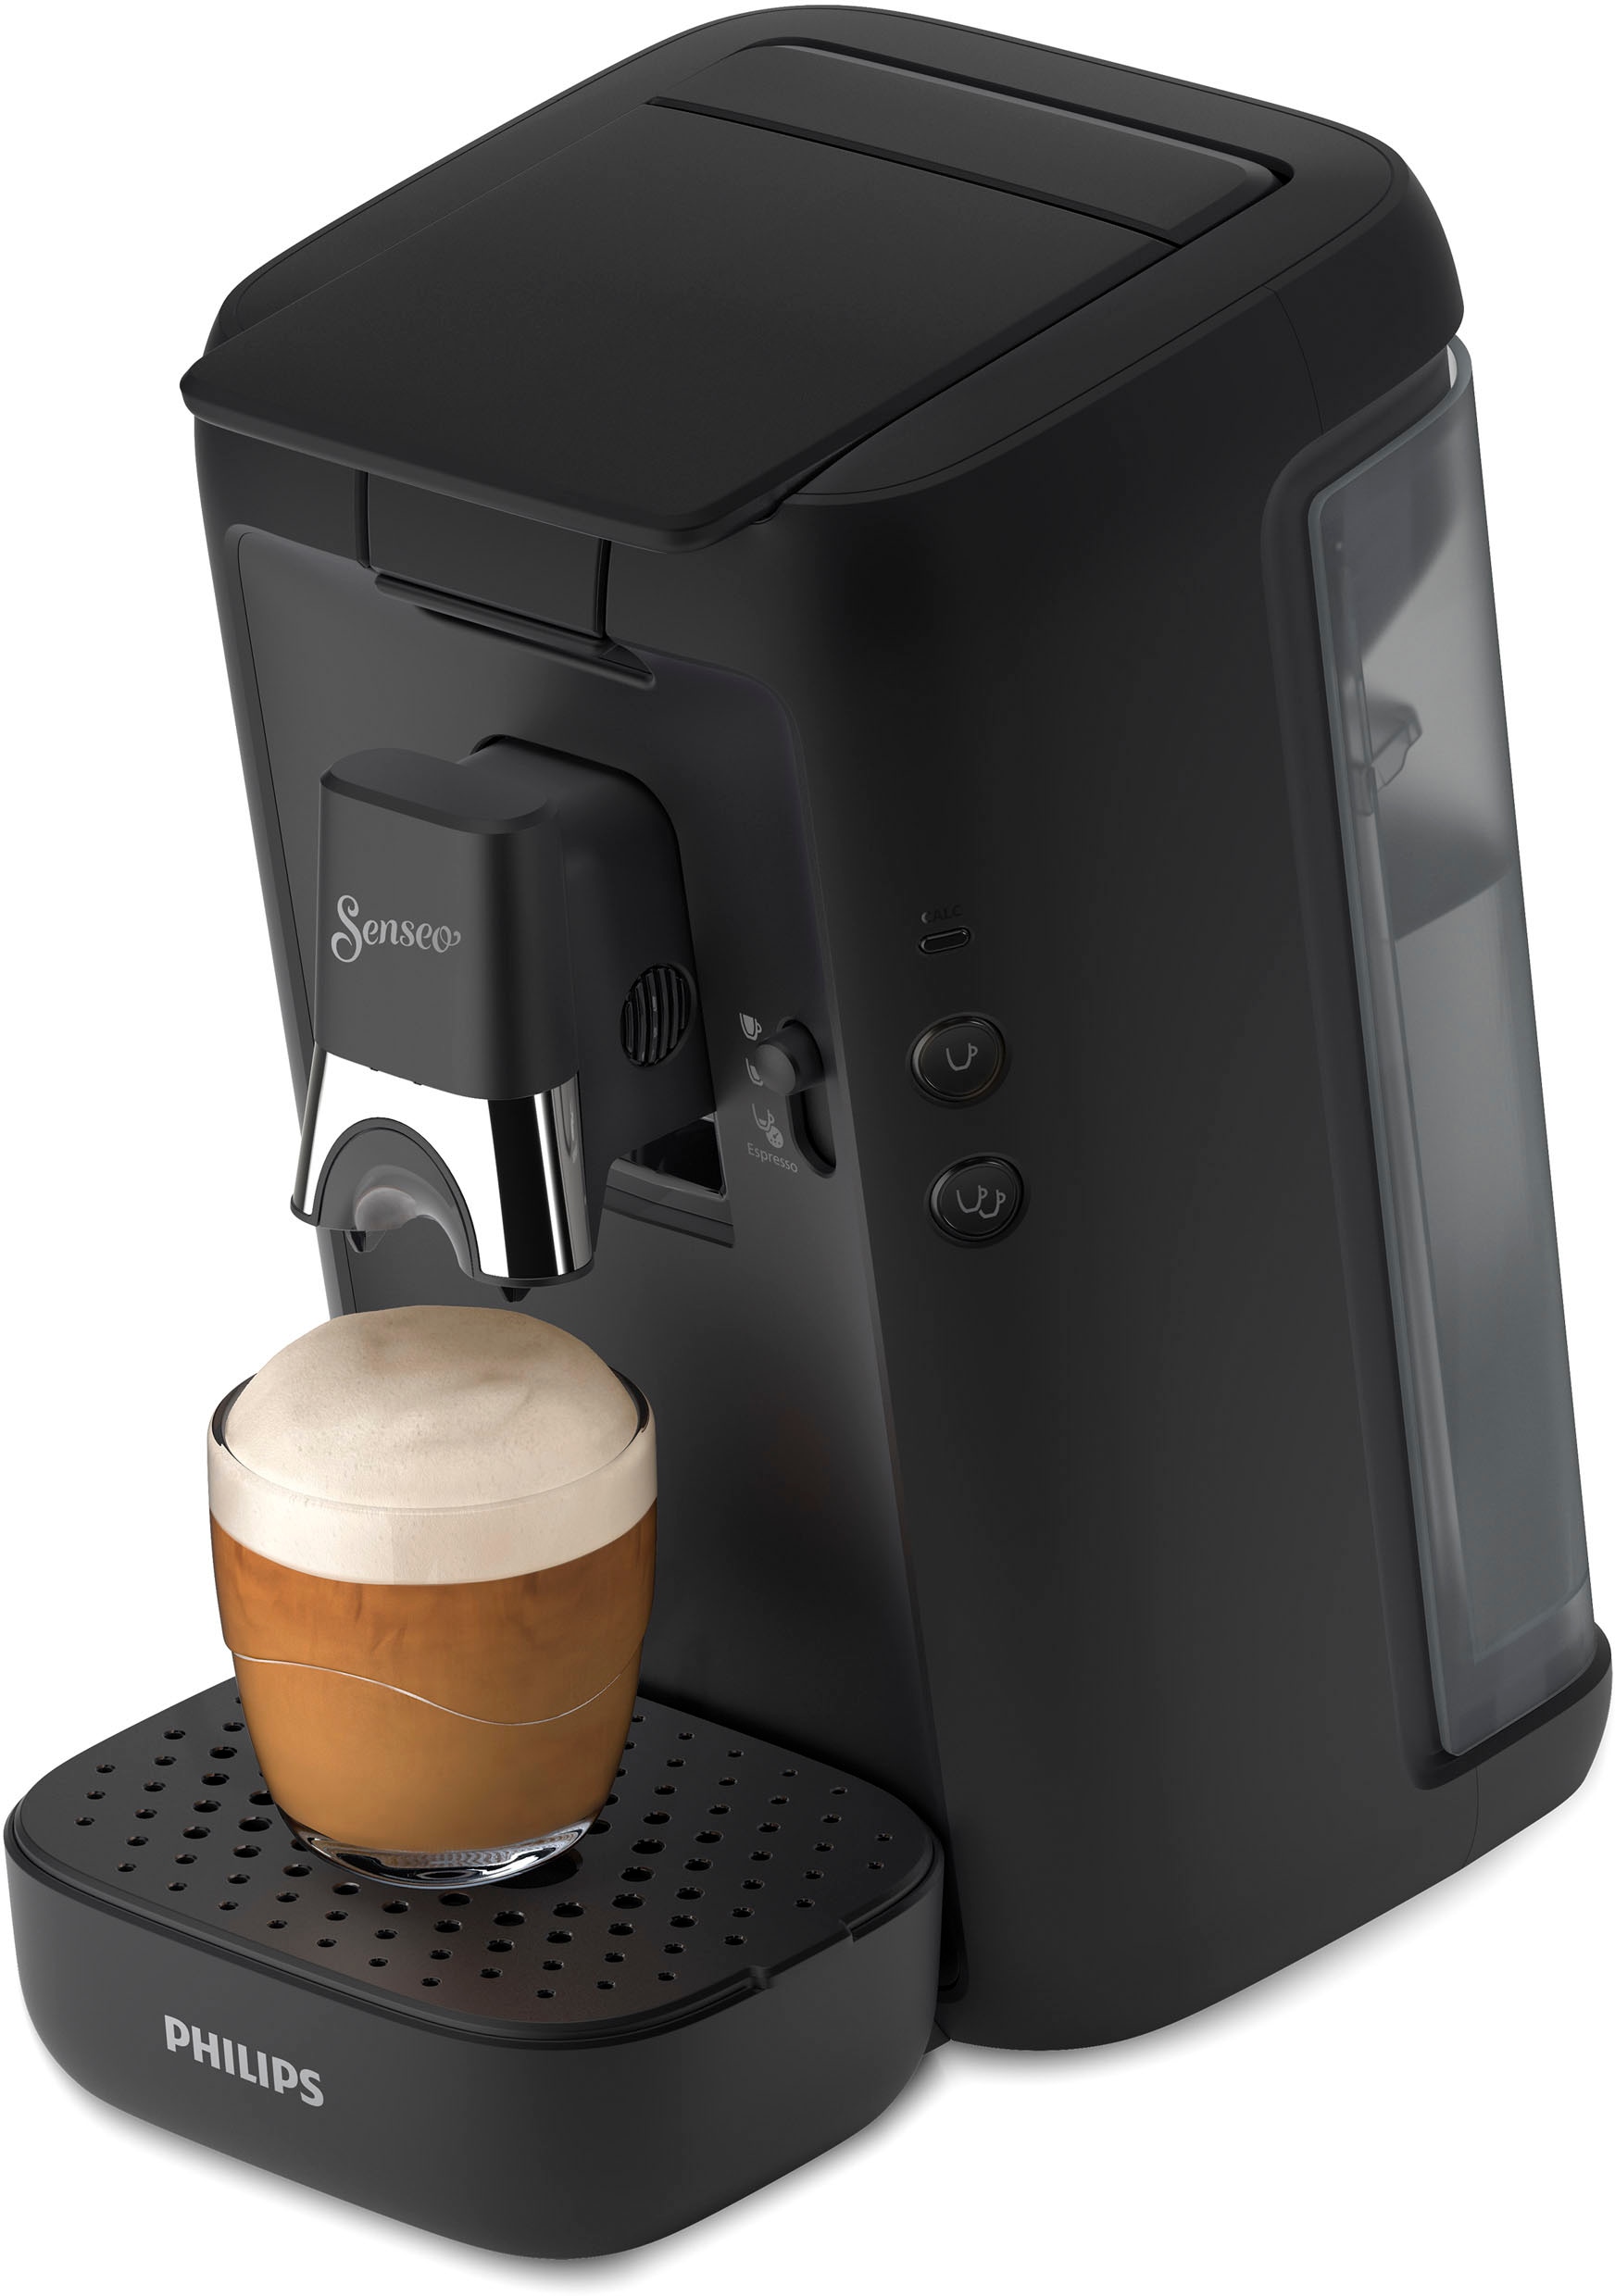 Philips Senseo Kaffeepadmaschine »Maestro CSA260/60«, UVP 3 im von € Gratis-Zugaben XXL Jahren Garantie mit inkl. 14,- Wert